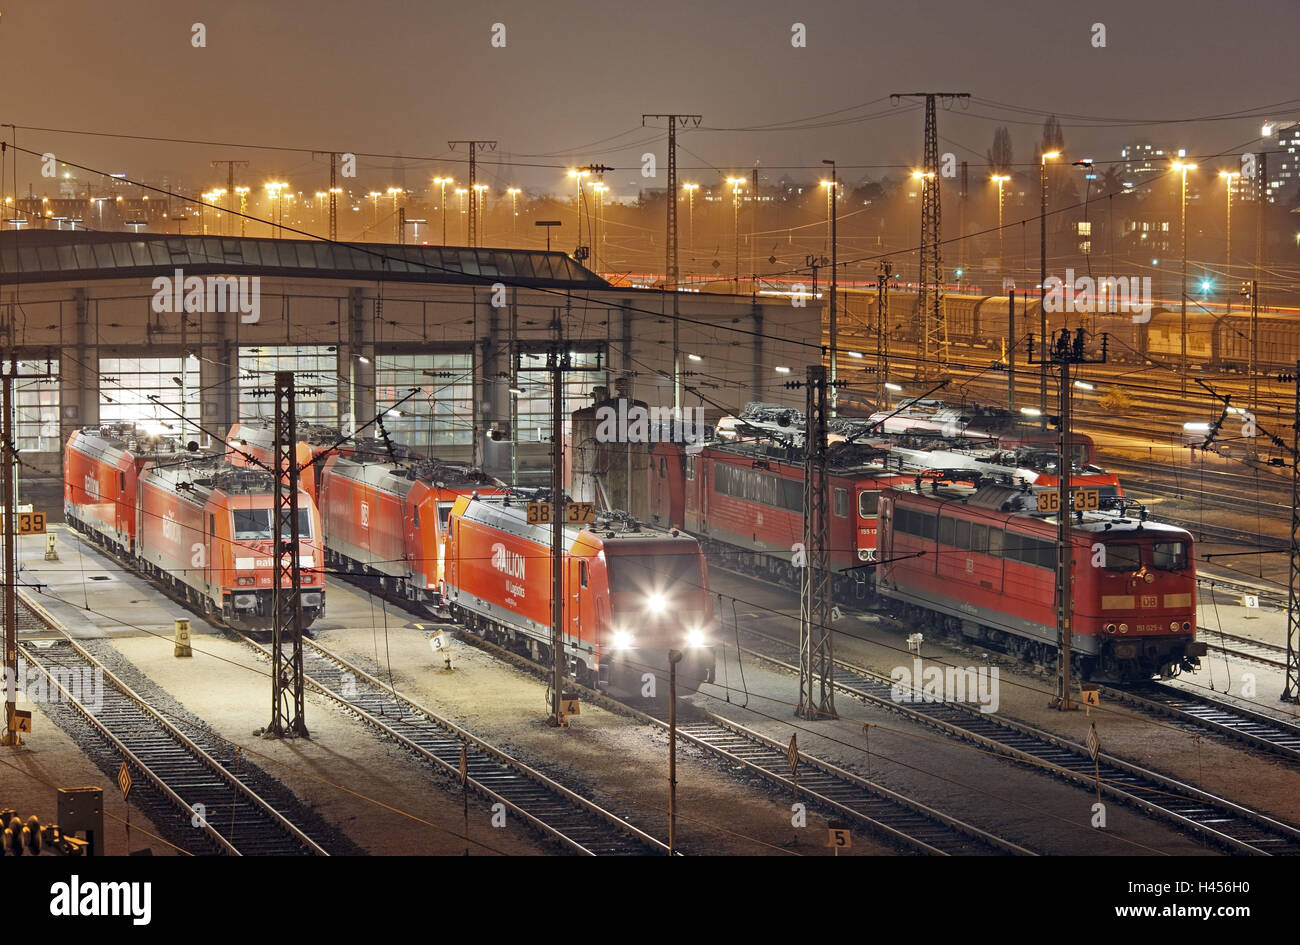 Locomotives, tracks, engine shed, night photography, Stock Photo